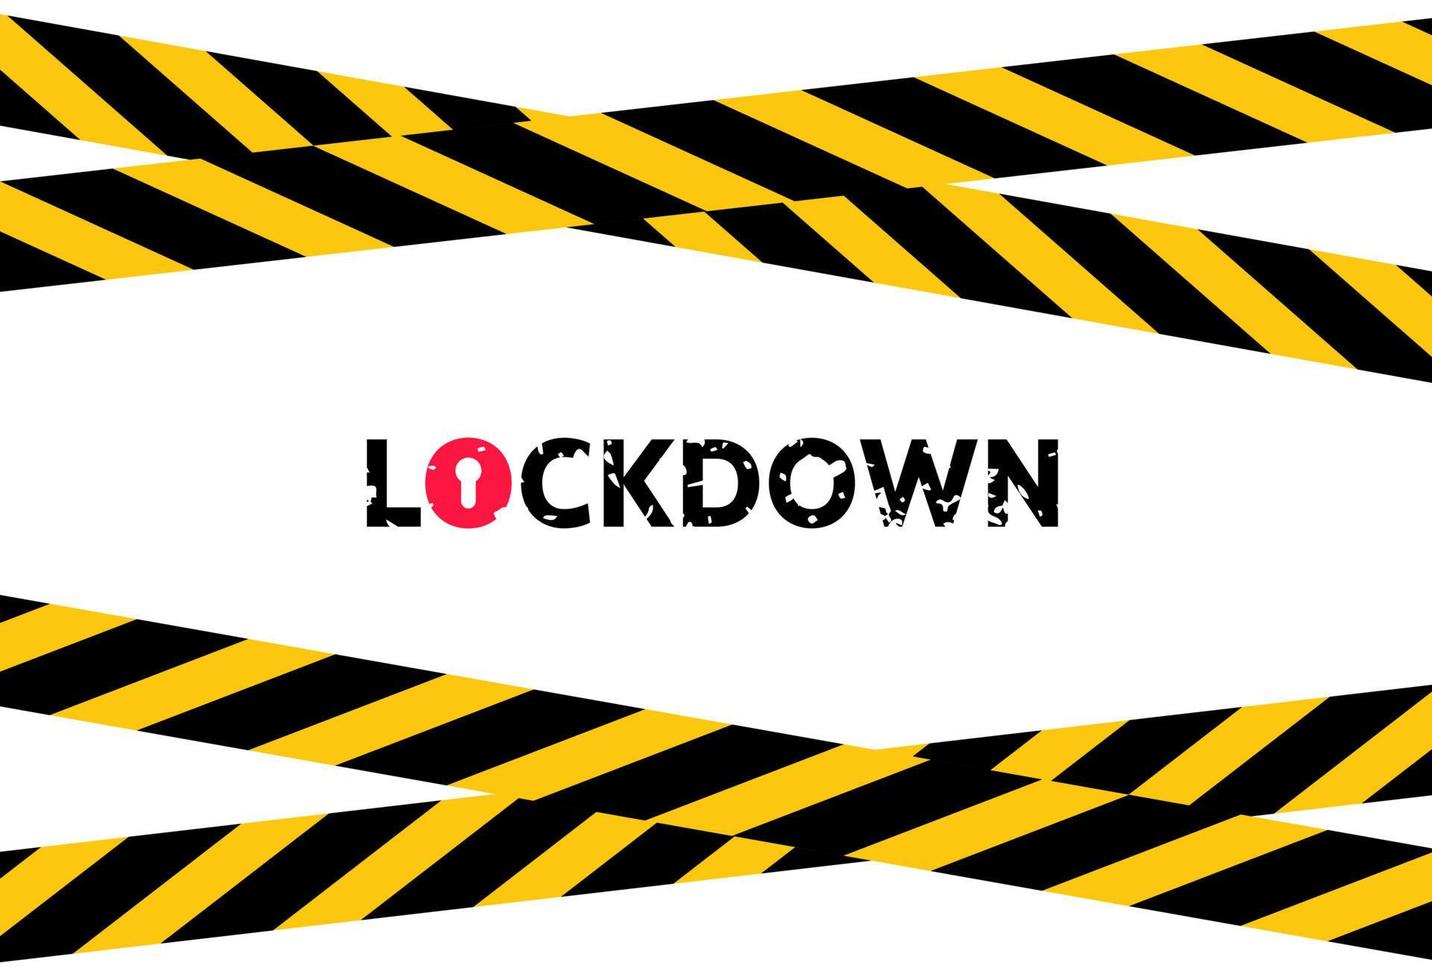 achtergrond van het lockdown-concept als gevolg van de coronaviruscrisis. zwarte en gele waarschuwingsbanden. vector